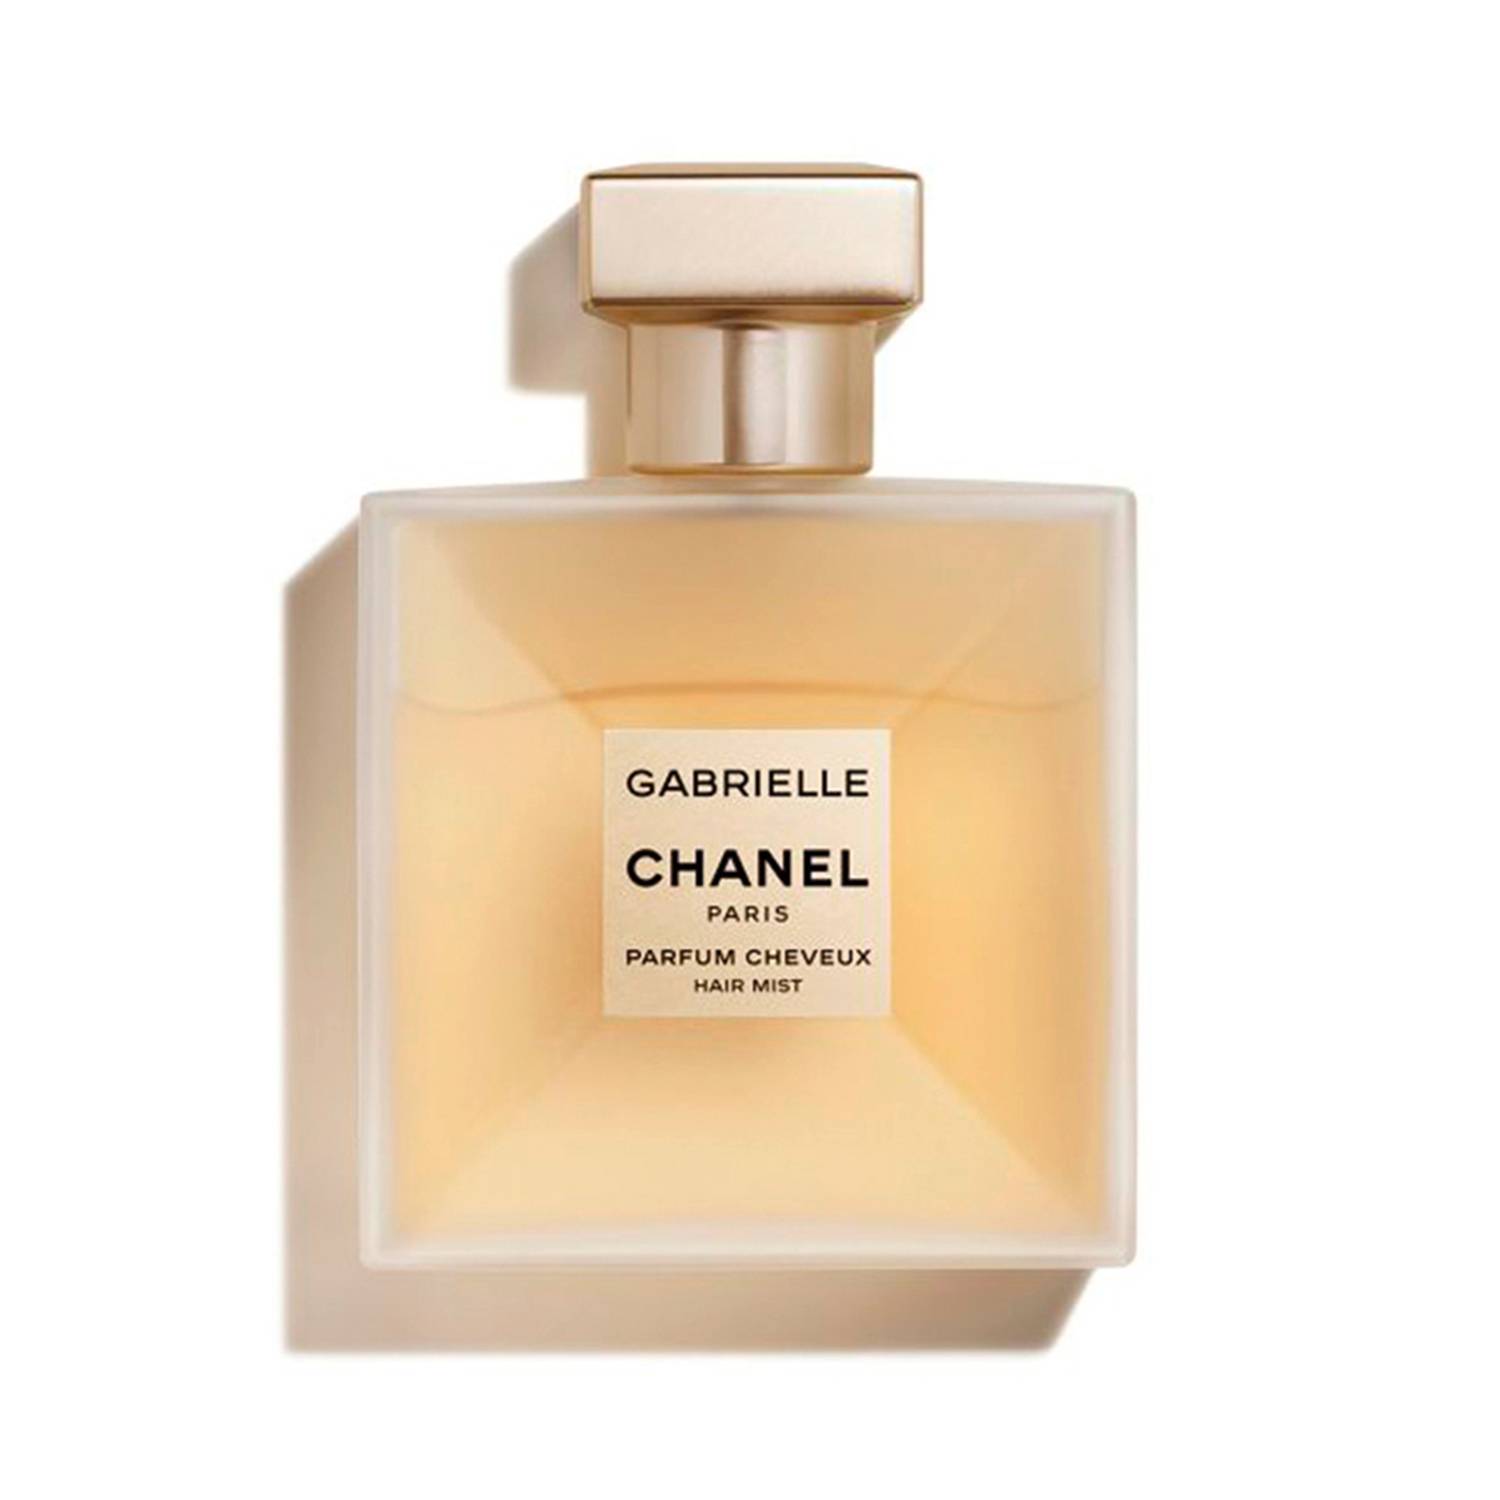 CHANEL GABRIELLE CHANEL Perfume Para El Cabello